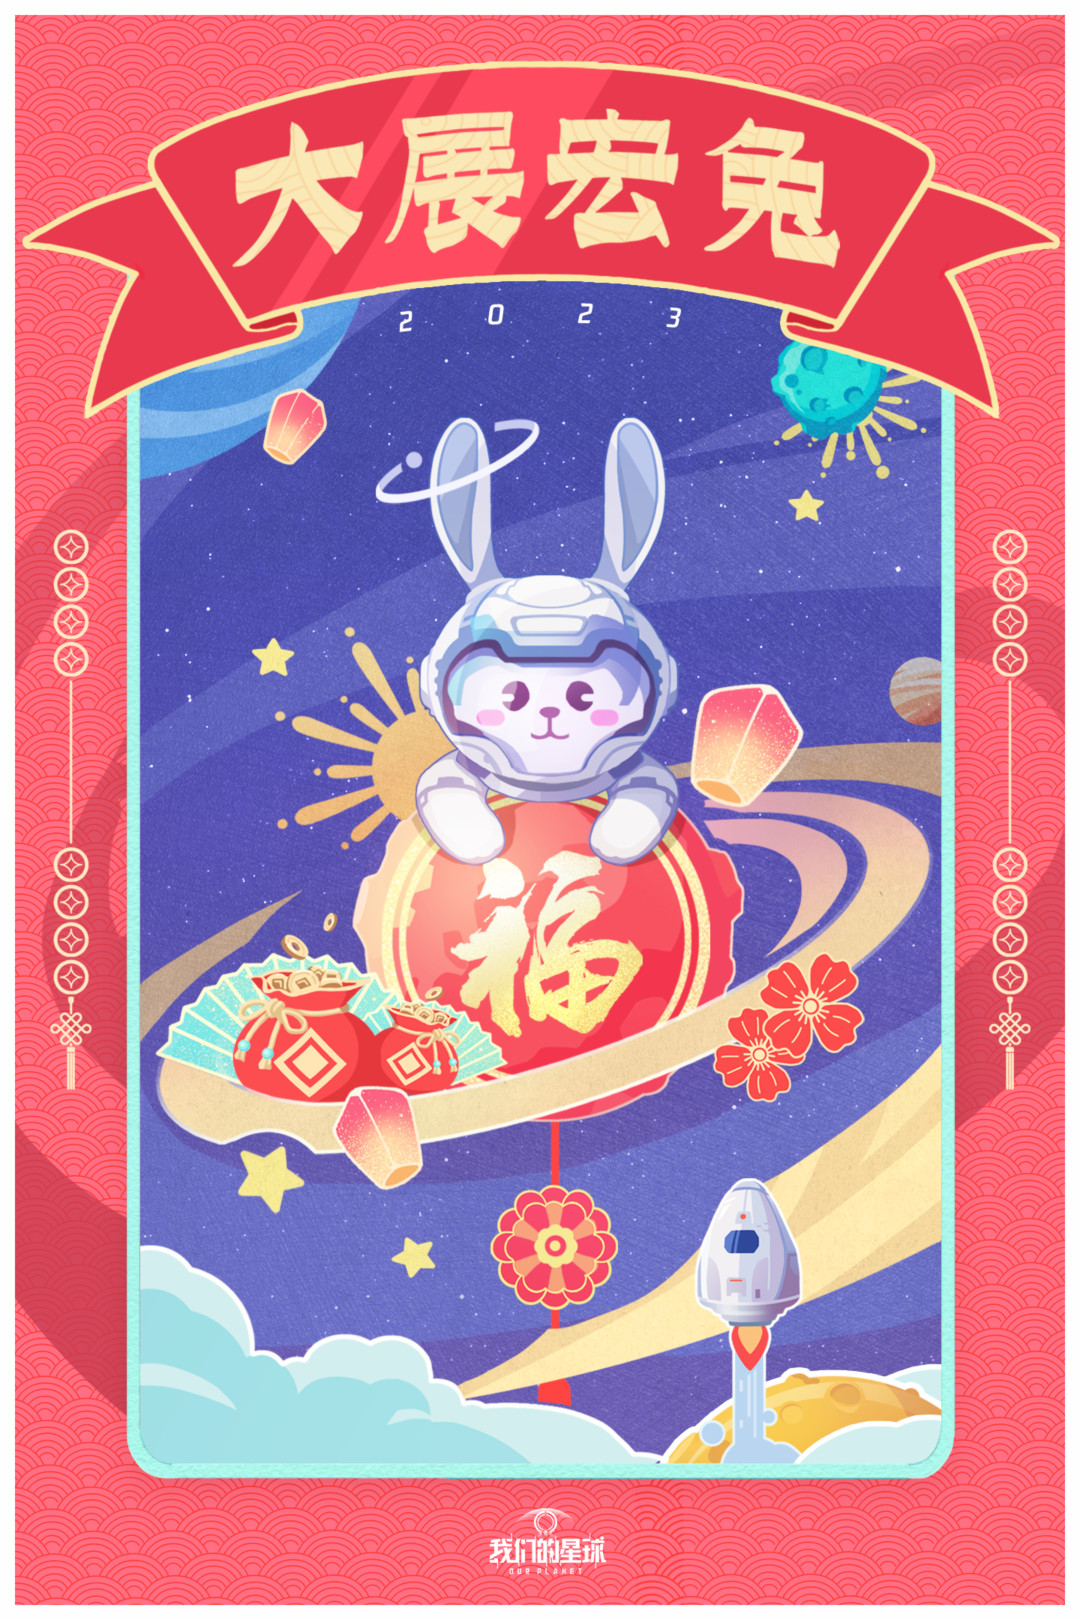 【新年壁纸】兔年快乐ヾ(◍°∇°◍)ﾉﾞ